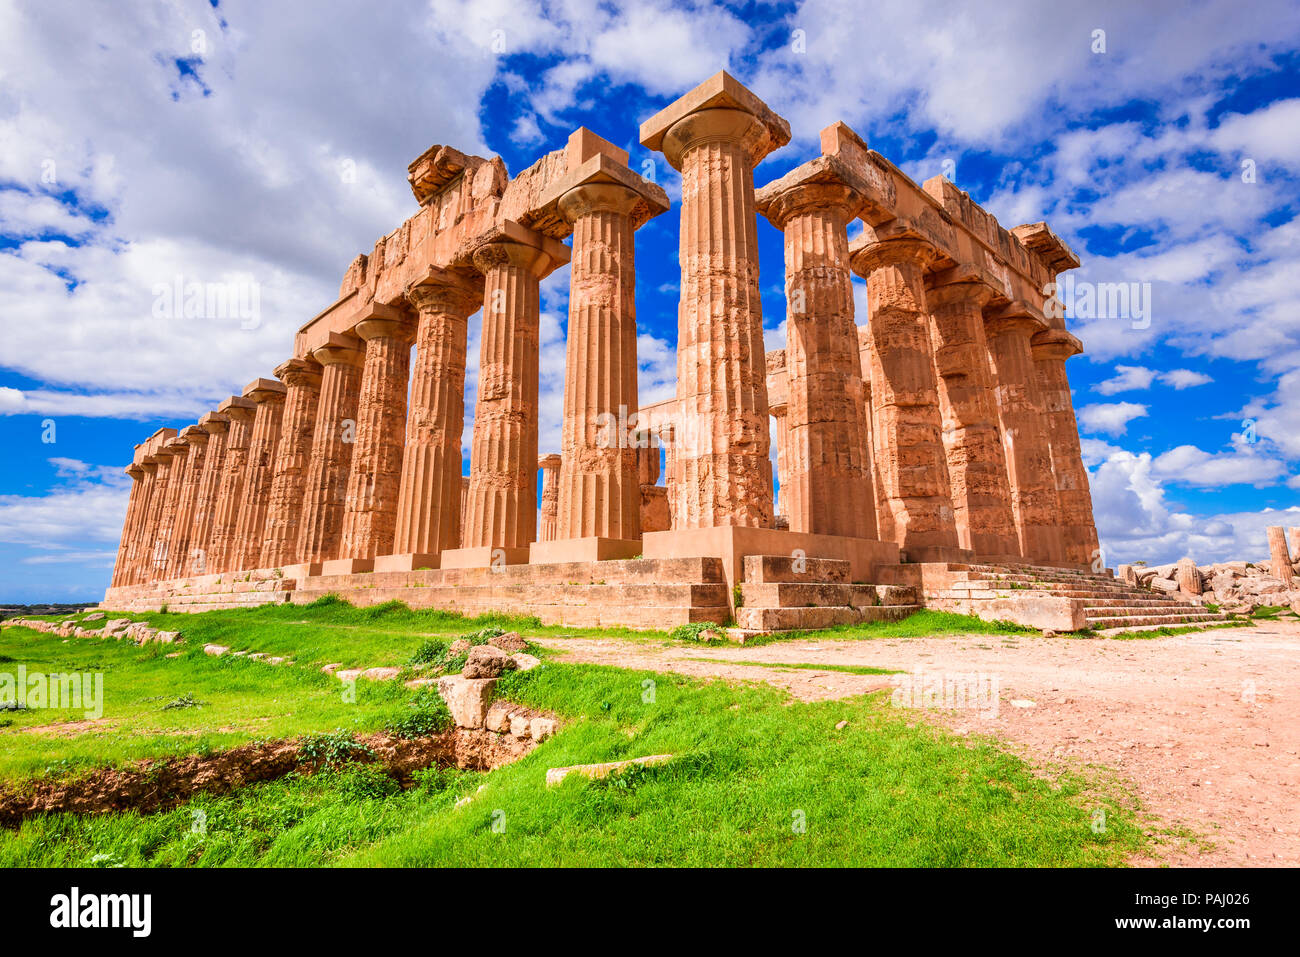 Selinunte in Sicilia. Tempio di Hera, antiche rovine greche in Italia, architettura in stile dorico. Foto Stock